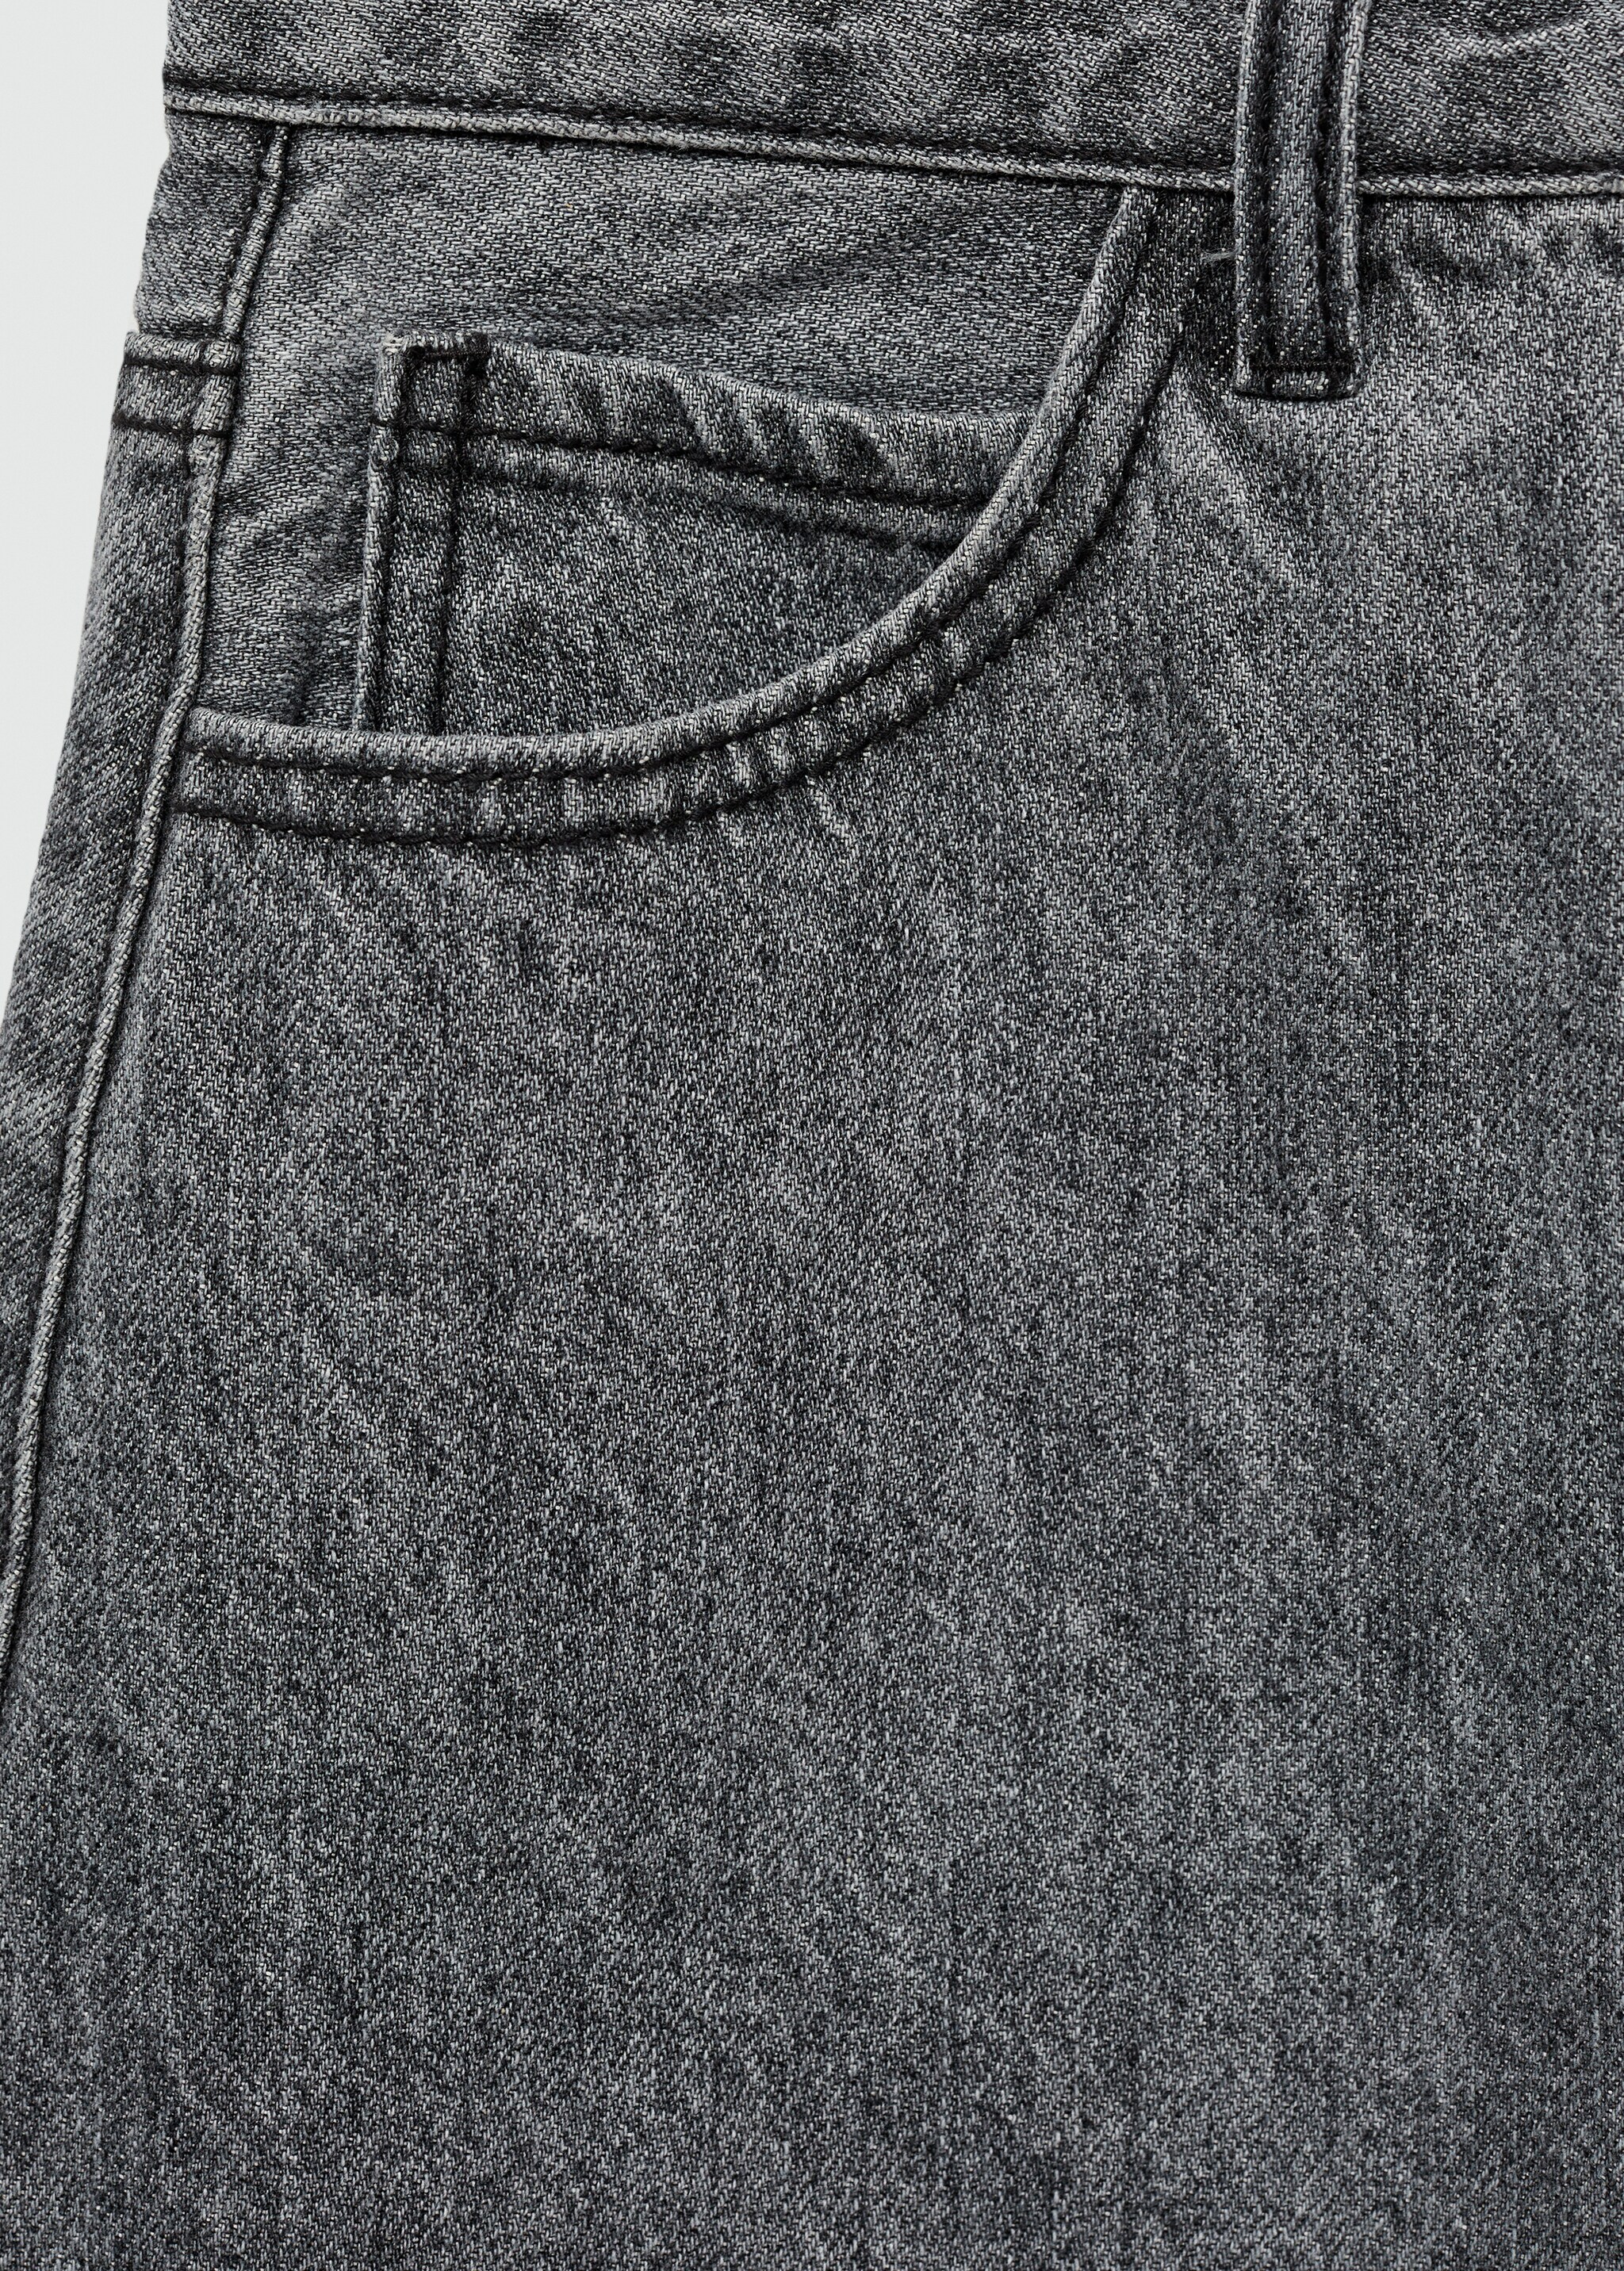 Jeans-Minirock - Detail des Artikels 8